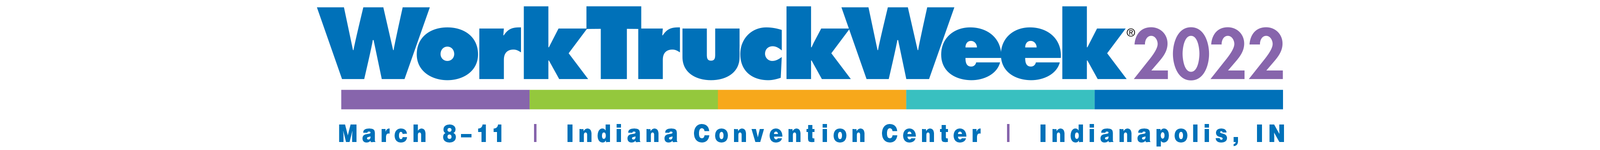 Work Truck Week 2022 logo